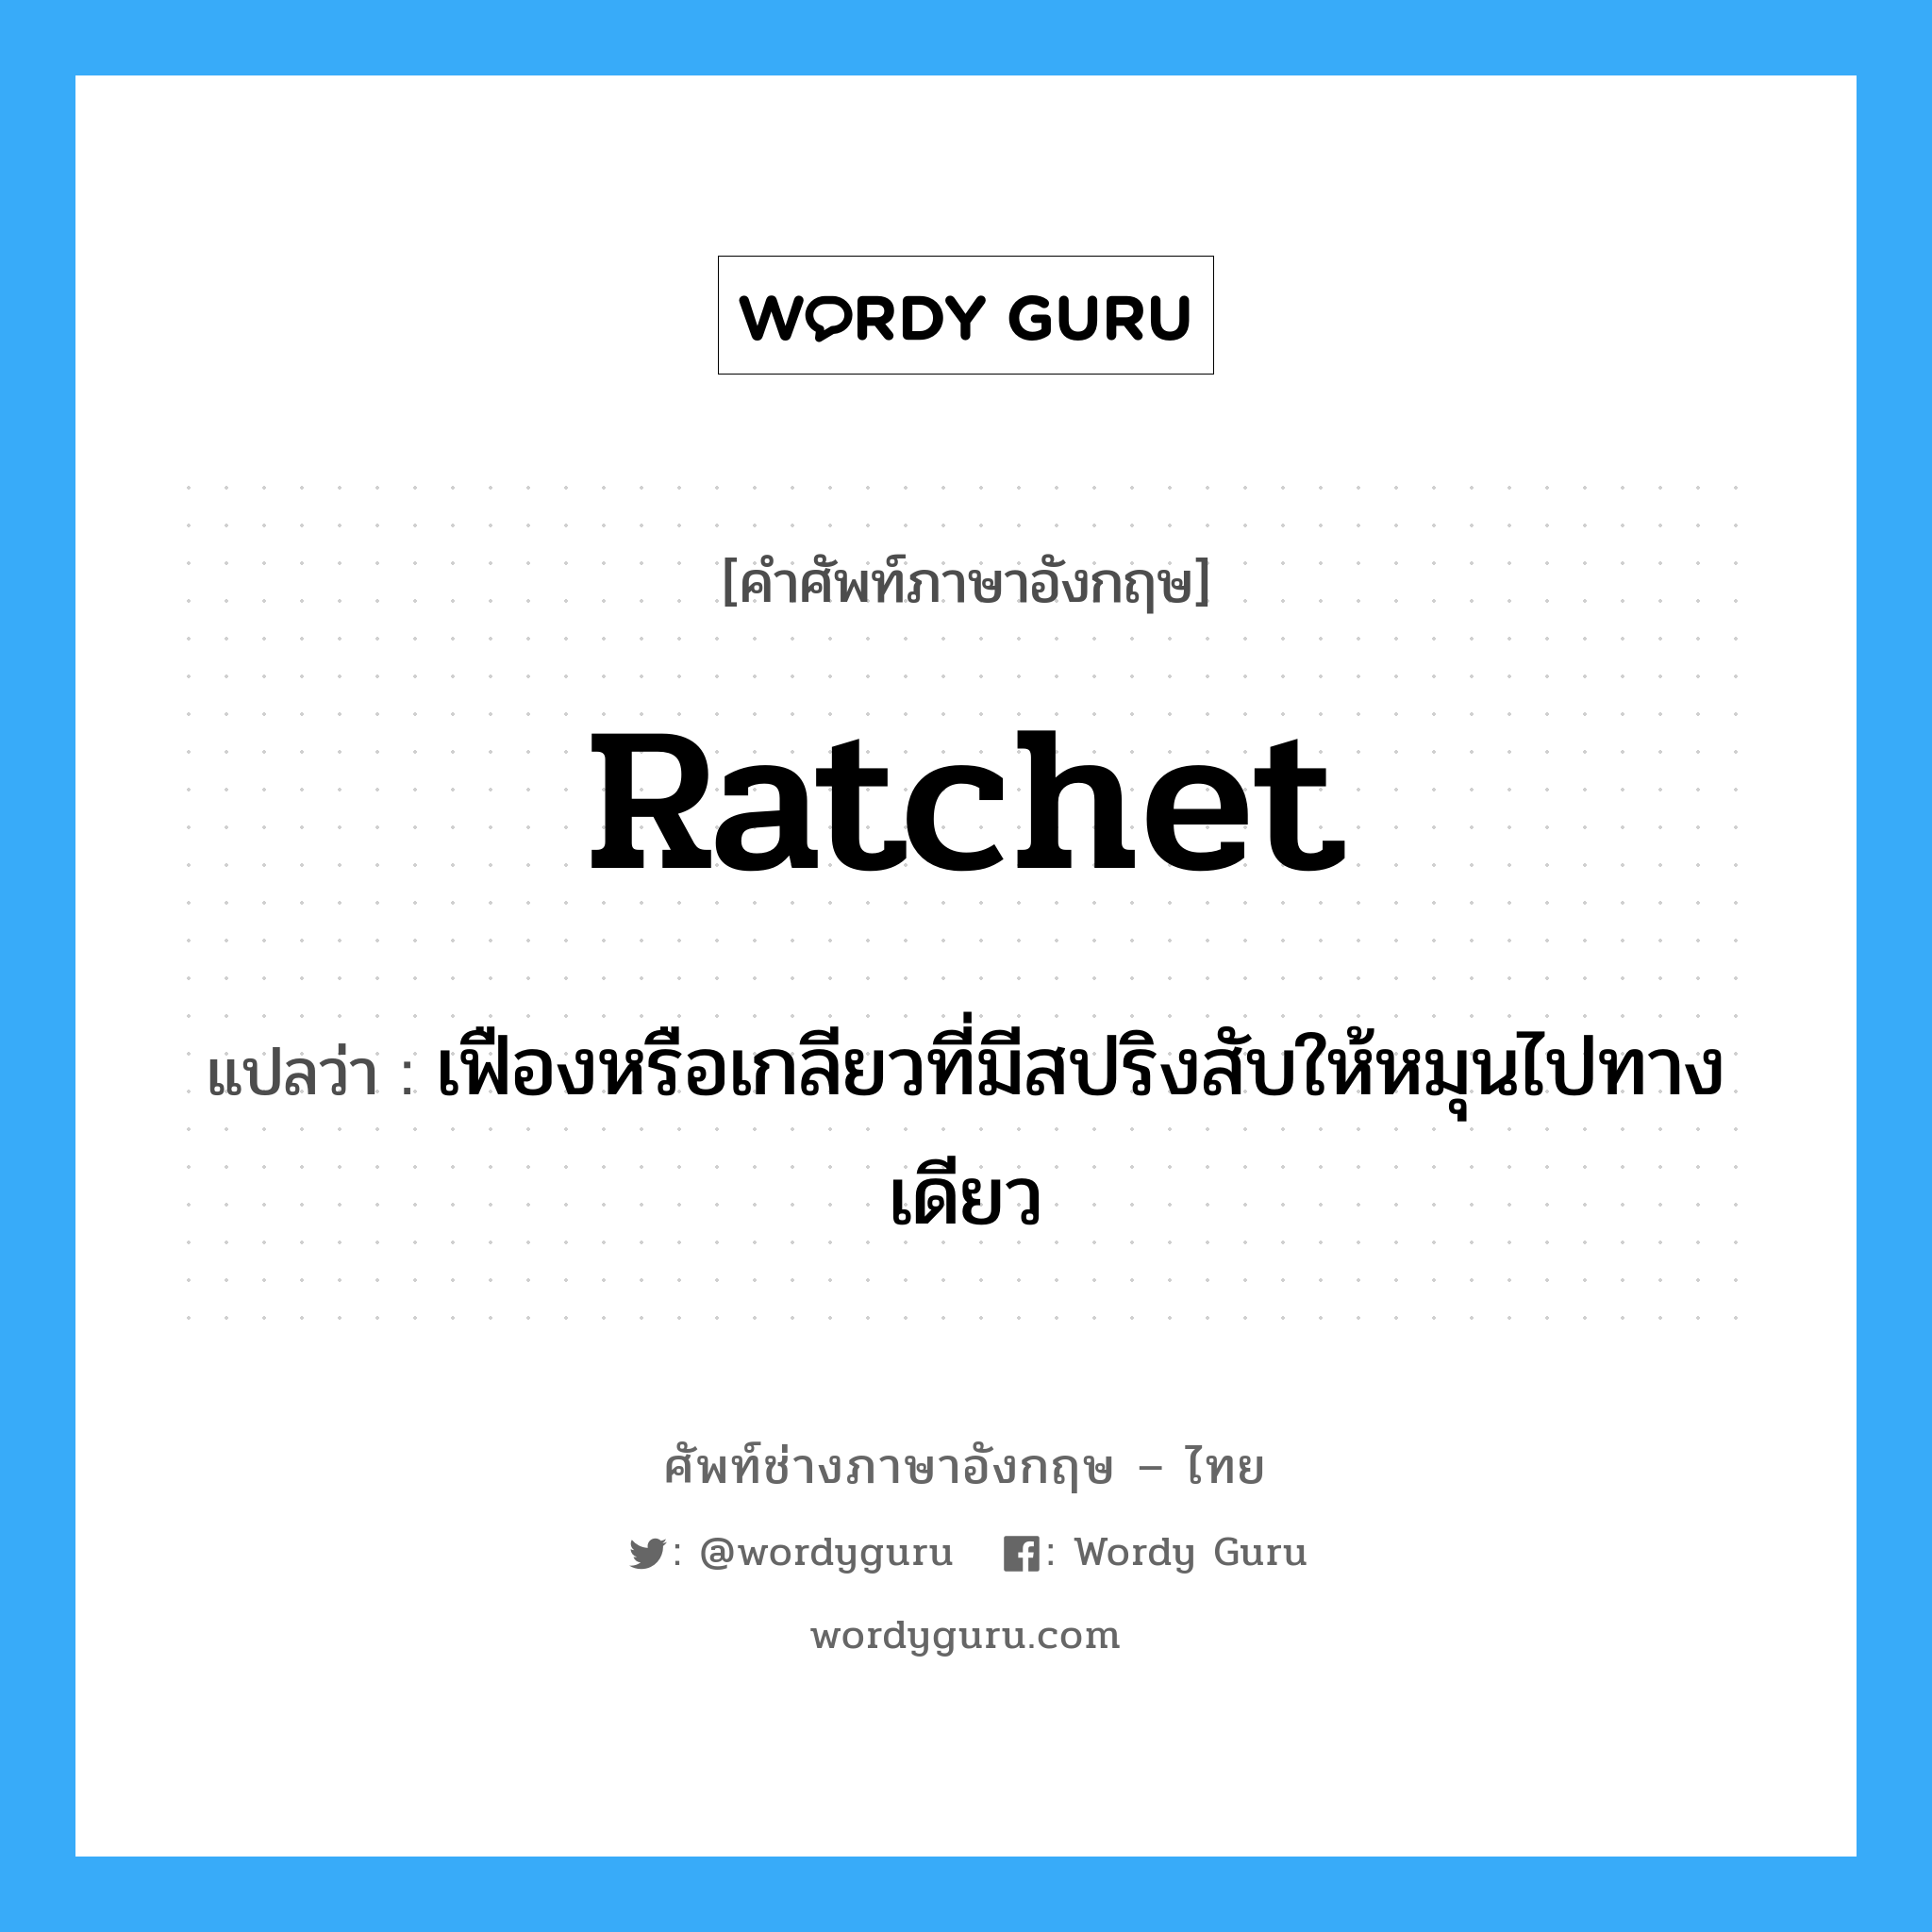 ratchet แปลว่า?, คำศัพท์ช่างภาษาอังกฤษ - ไทย ratchet คำศัพท์ภาษาอังกฤษ ratchet แปลว่า เฟืองหรือเกลียวที่มีสปริงสับให้หมุนไปทางเดียว